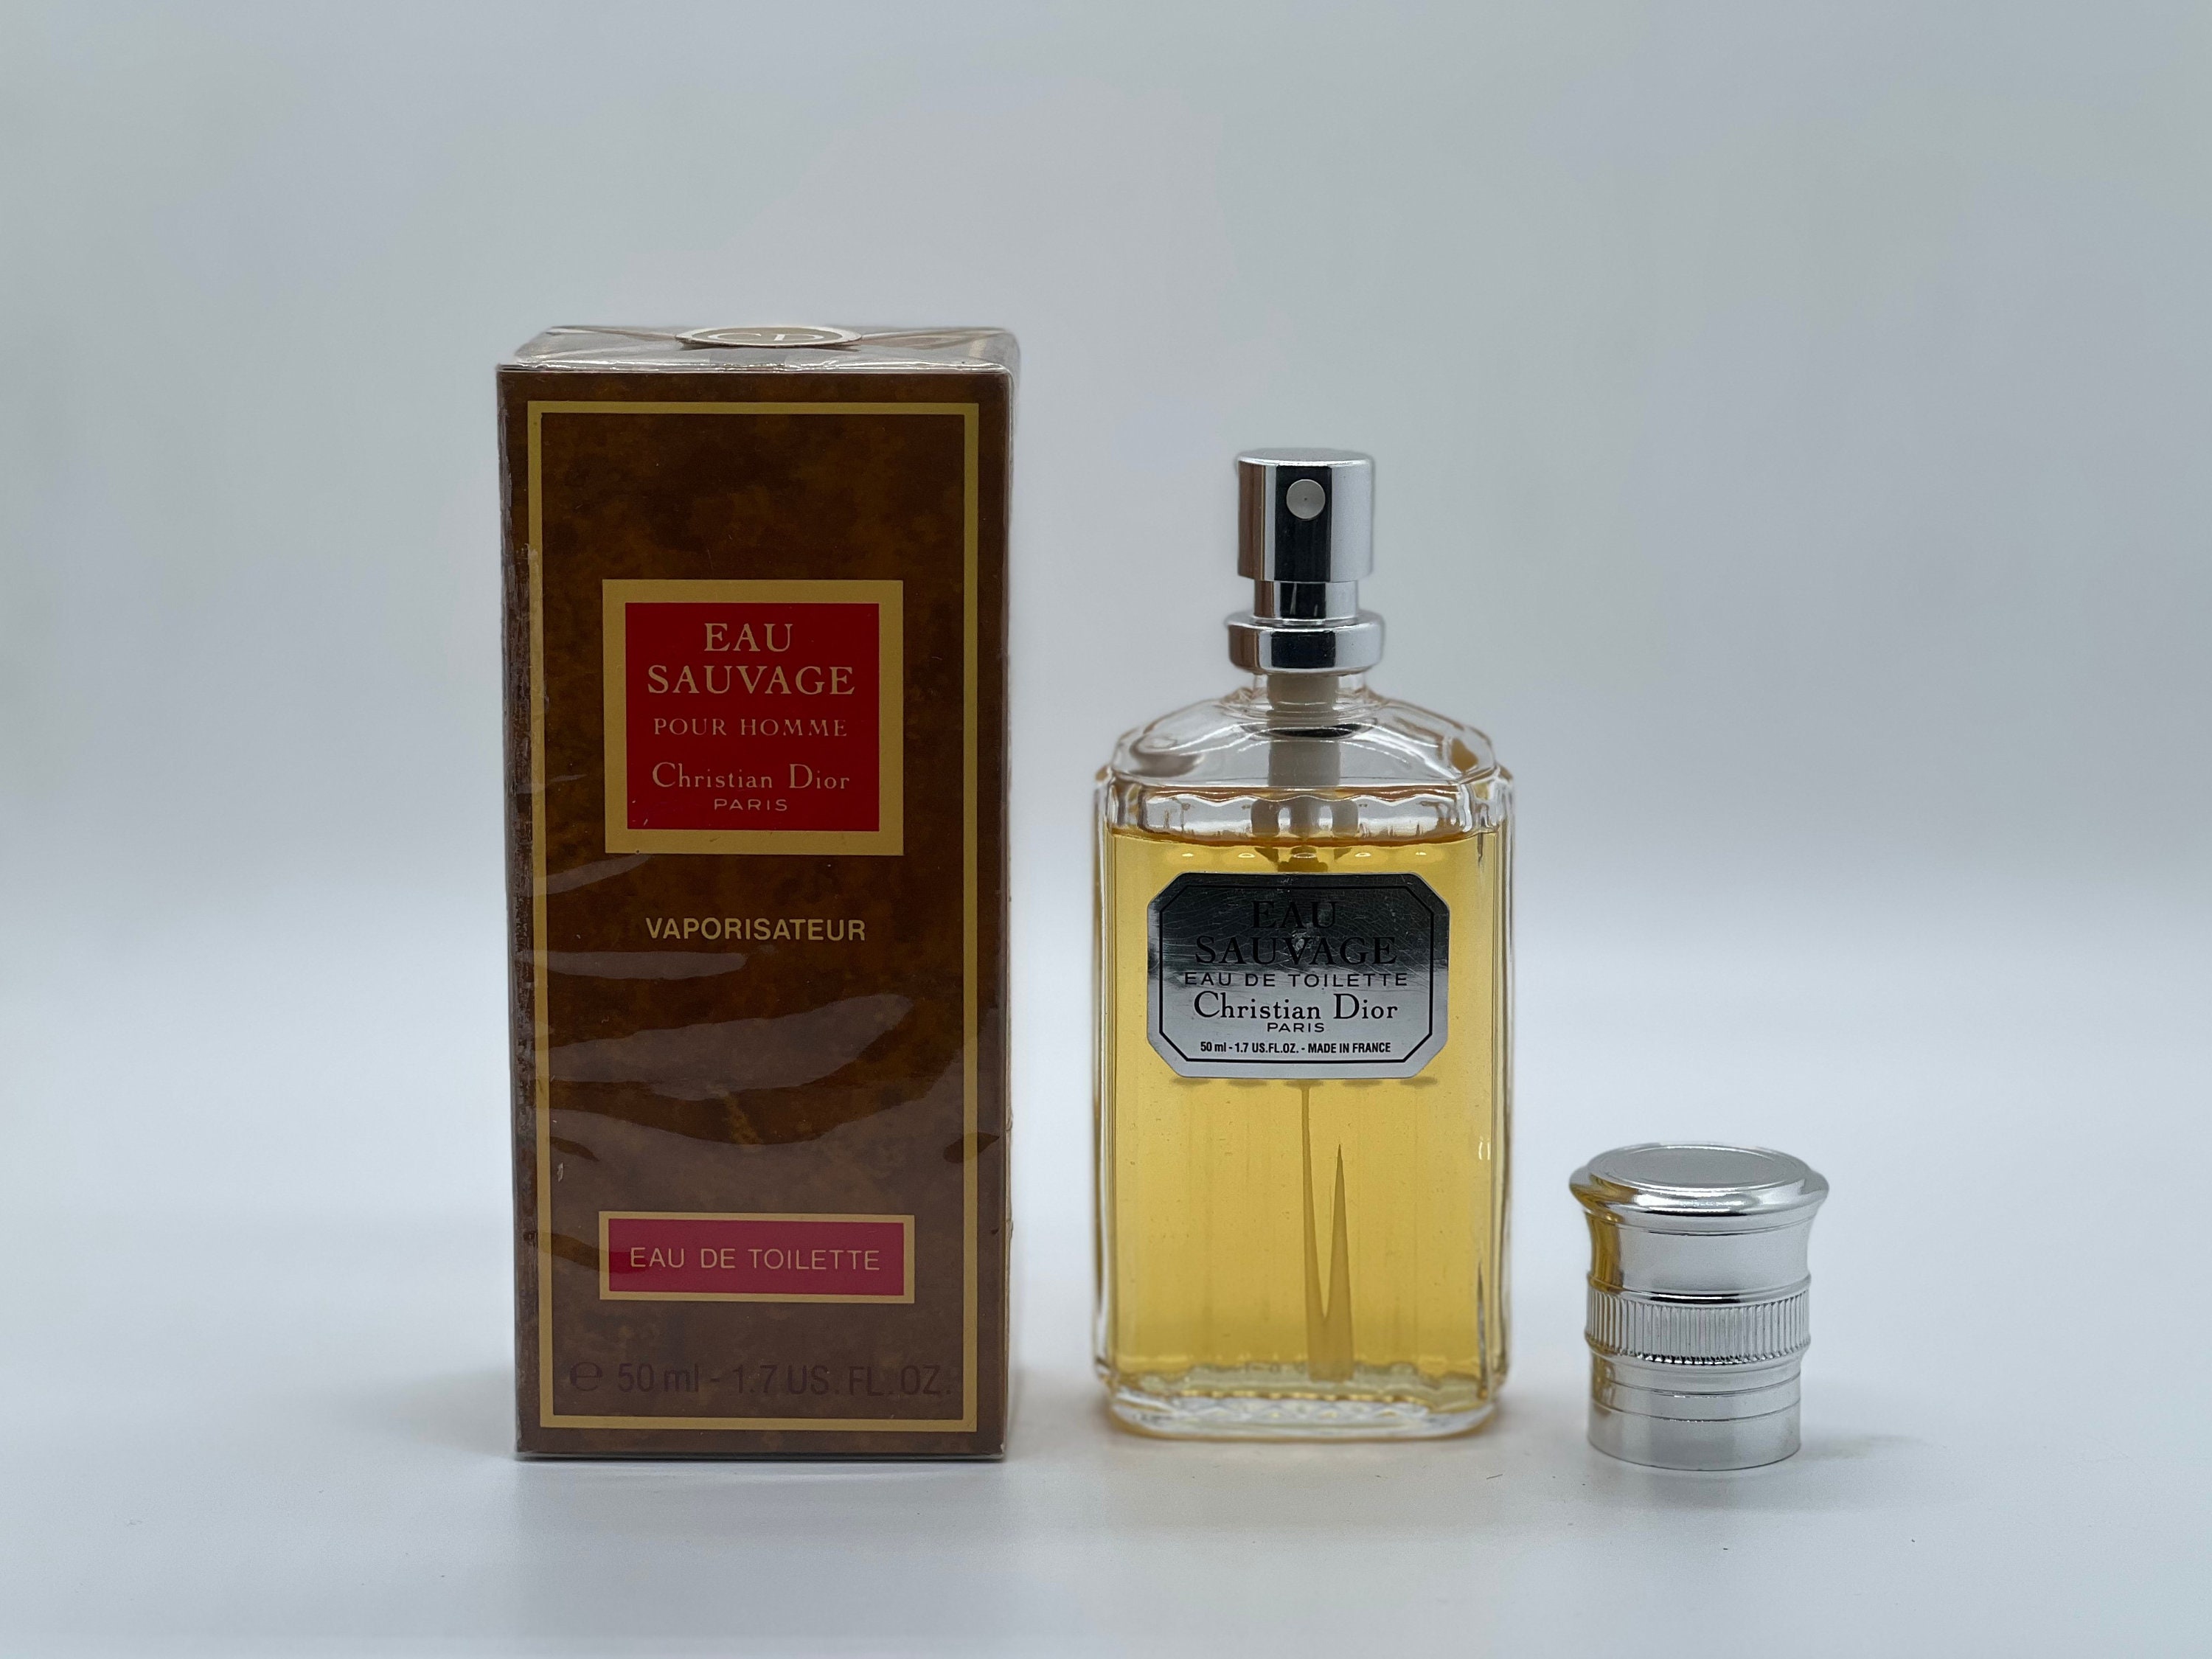 1979 Vintage Christian Dior Eau Sauvage Perfume Ad by Rene Gruau